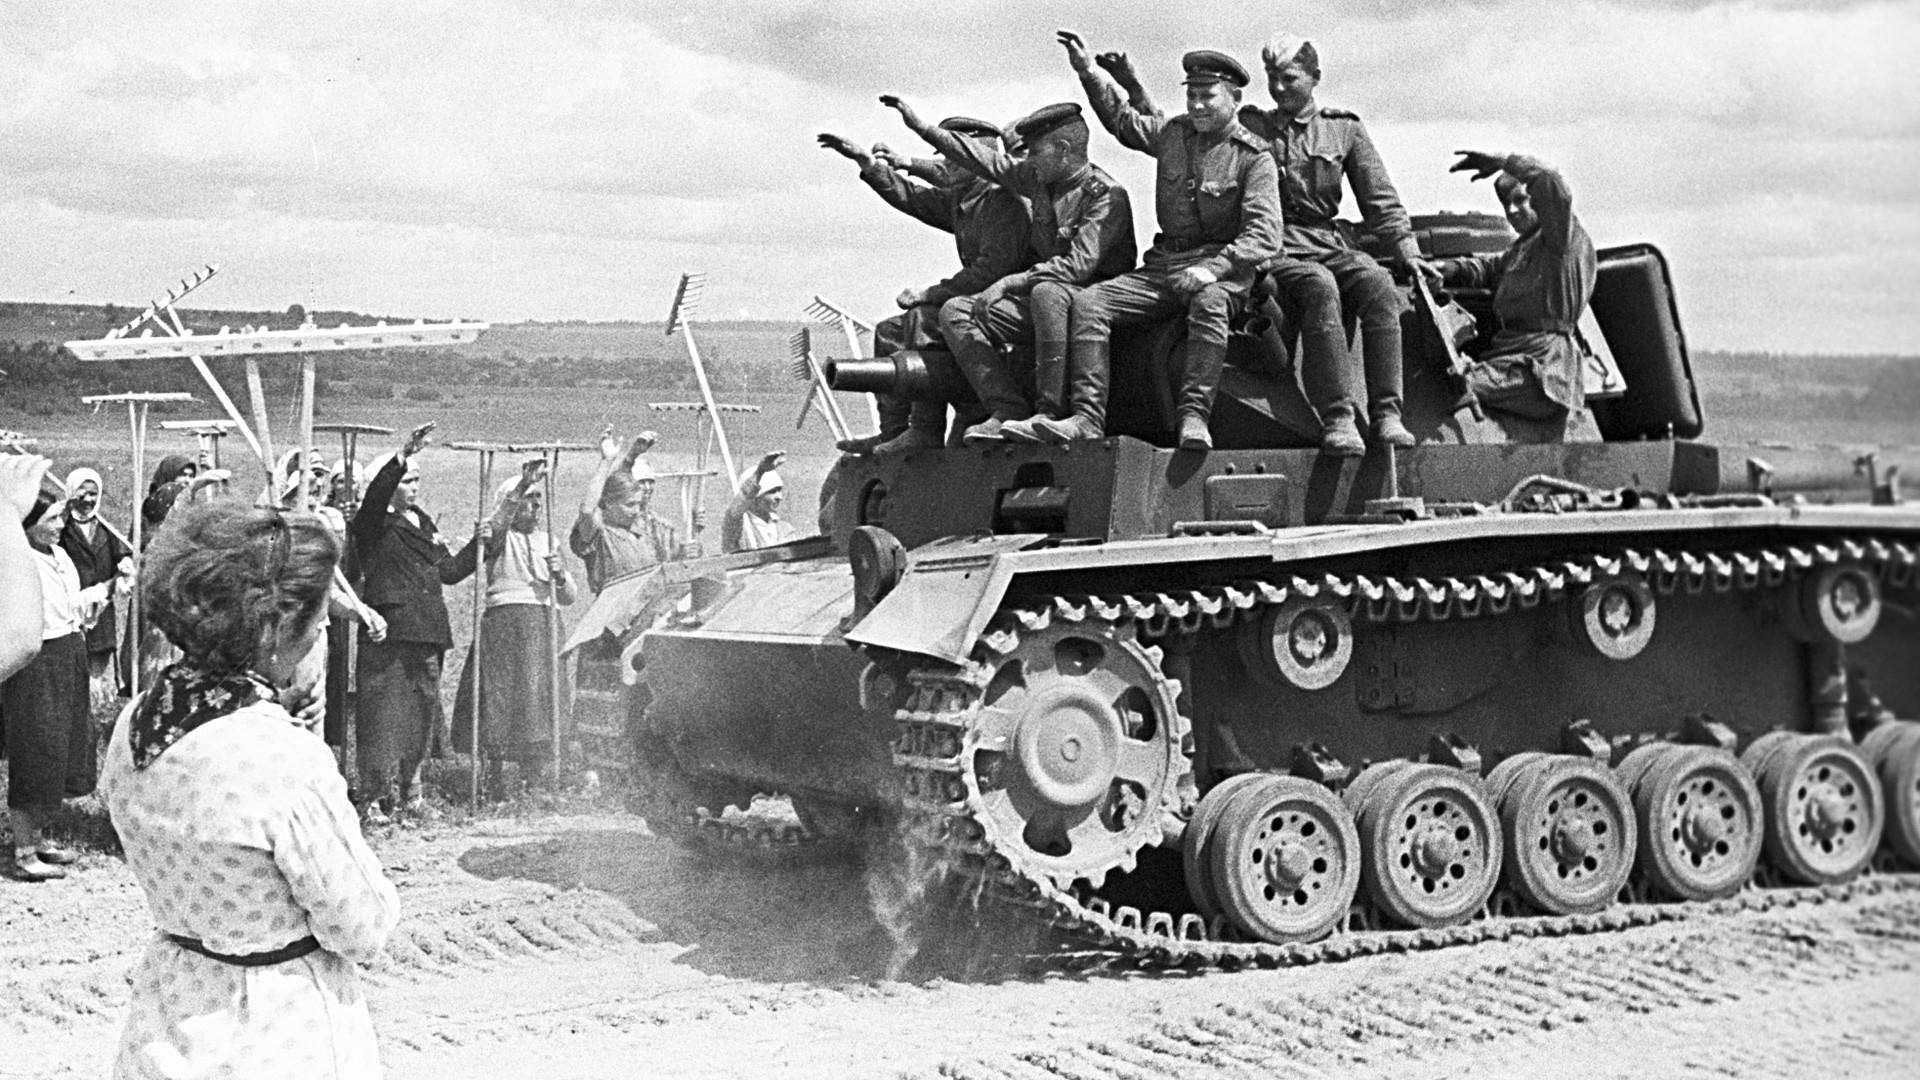 Sowjetische Soldaten sitzen auf einem erbeuteten Panzer, 1944.